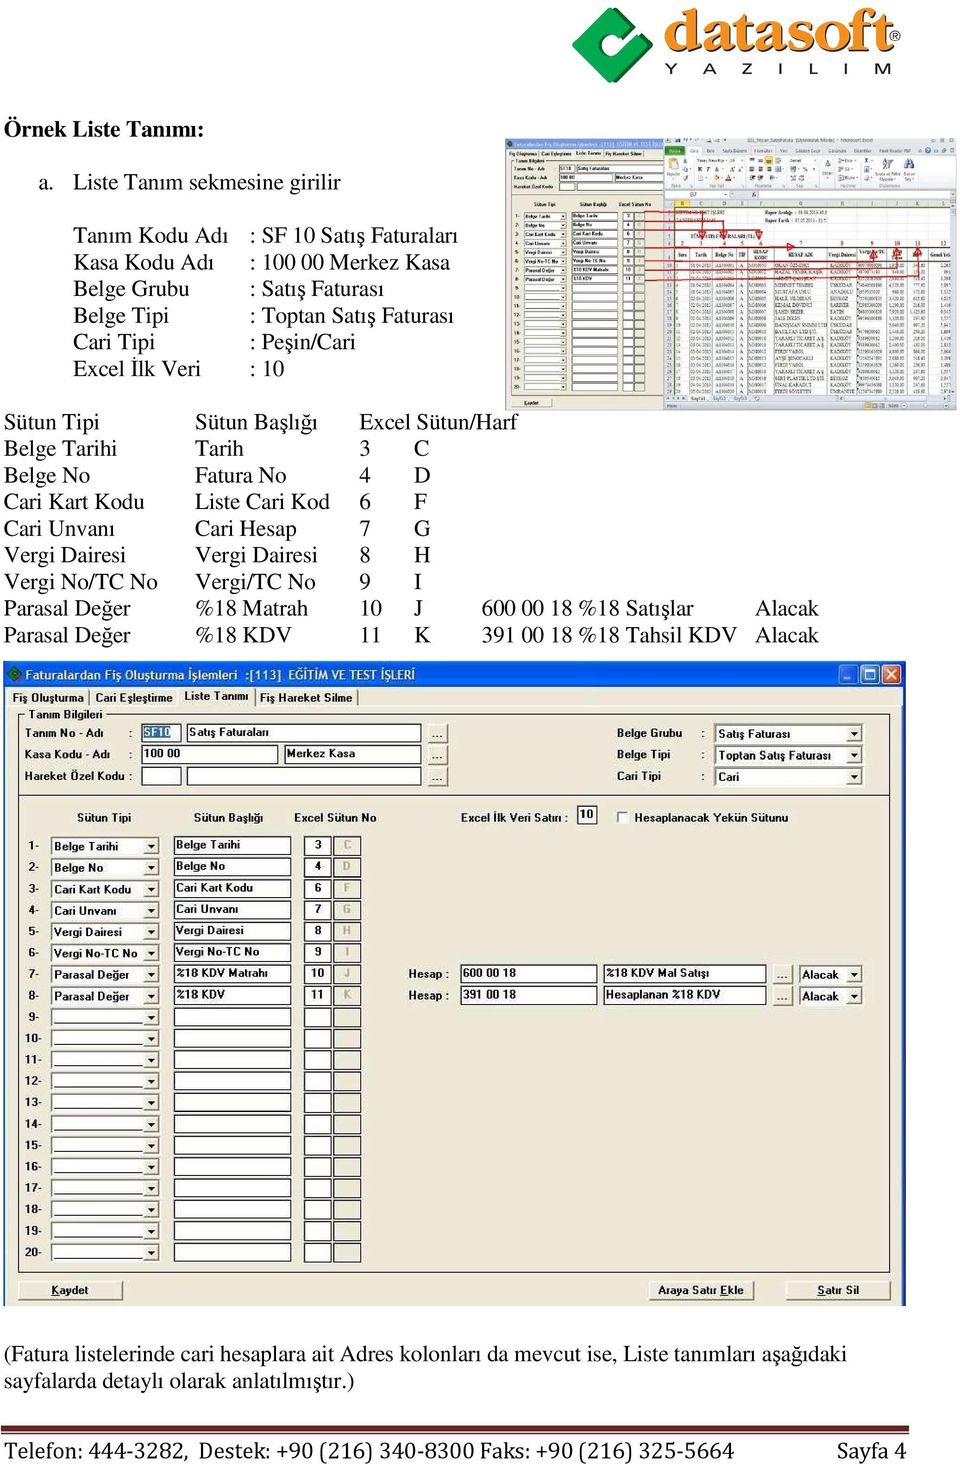 Excel Đlk Veri : 10 Sütun Tipi Sütun Başlığı Excel Sütun/Harf Belge Tarihi Tarih 3 C Belge No Fatura No 4 D Cari Kart Kodu Liste Cari Kod 6 F Cari Unvanı Cari Hesap 7 G Vergi Dairesi Vergi